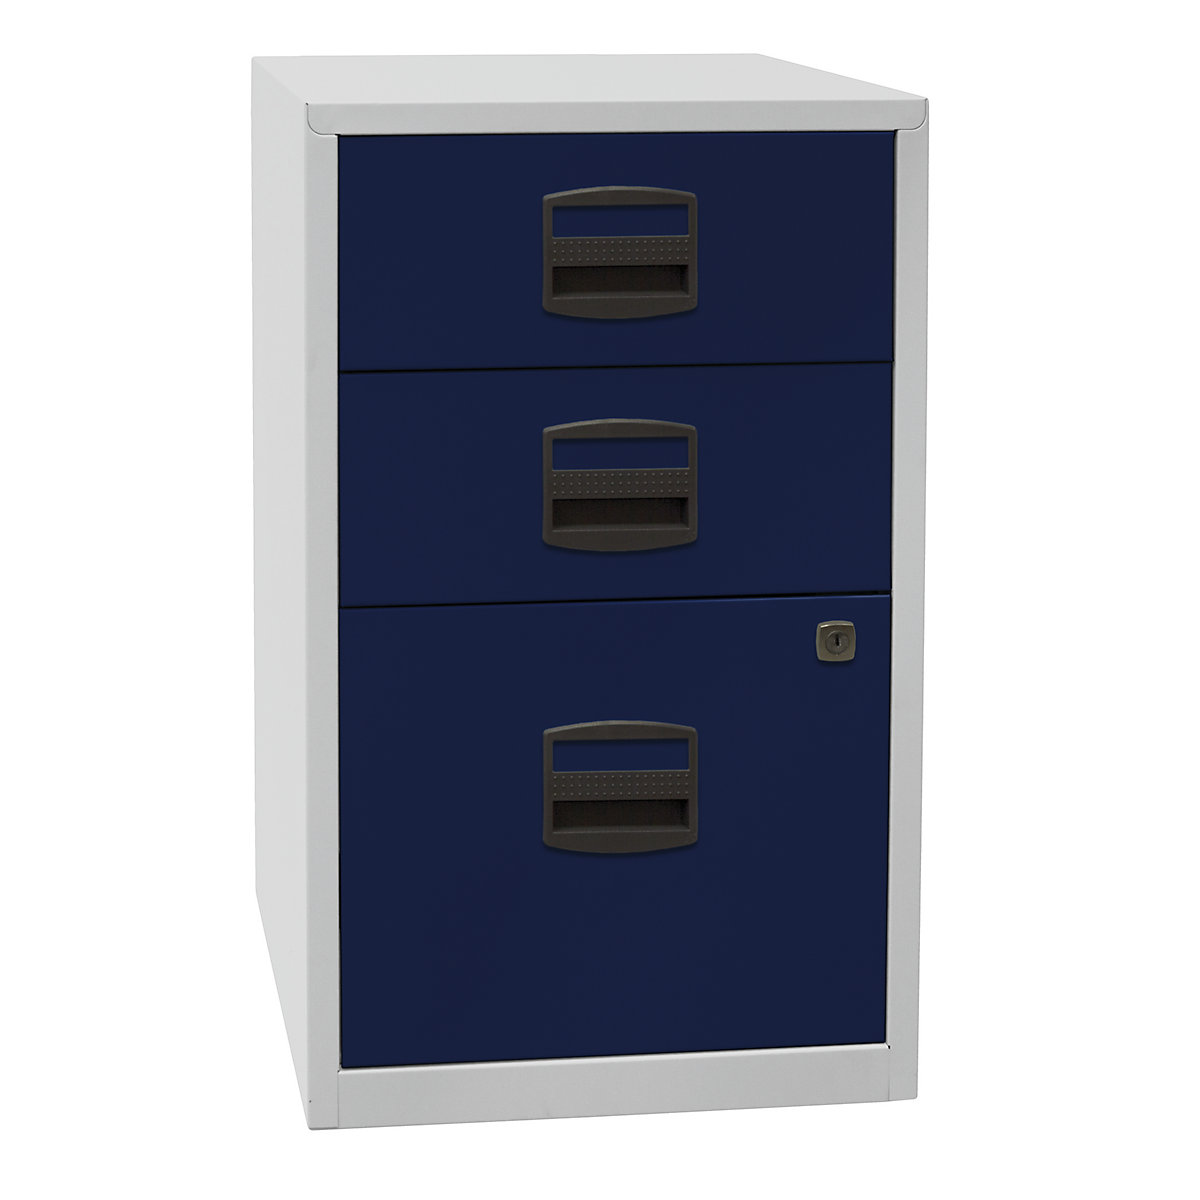 Stanski predalnik PFA – BISLEY, 2 predala, 1 okvir za obešalne mape, svetlo siva / oxfordsko modra-3